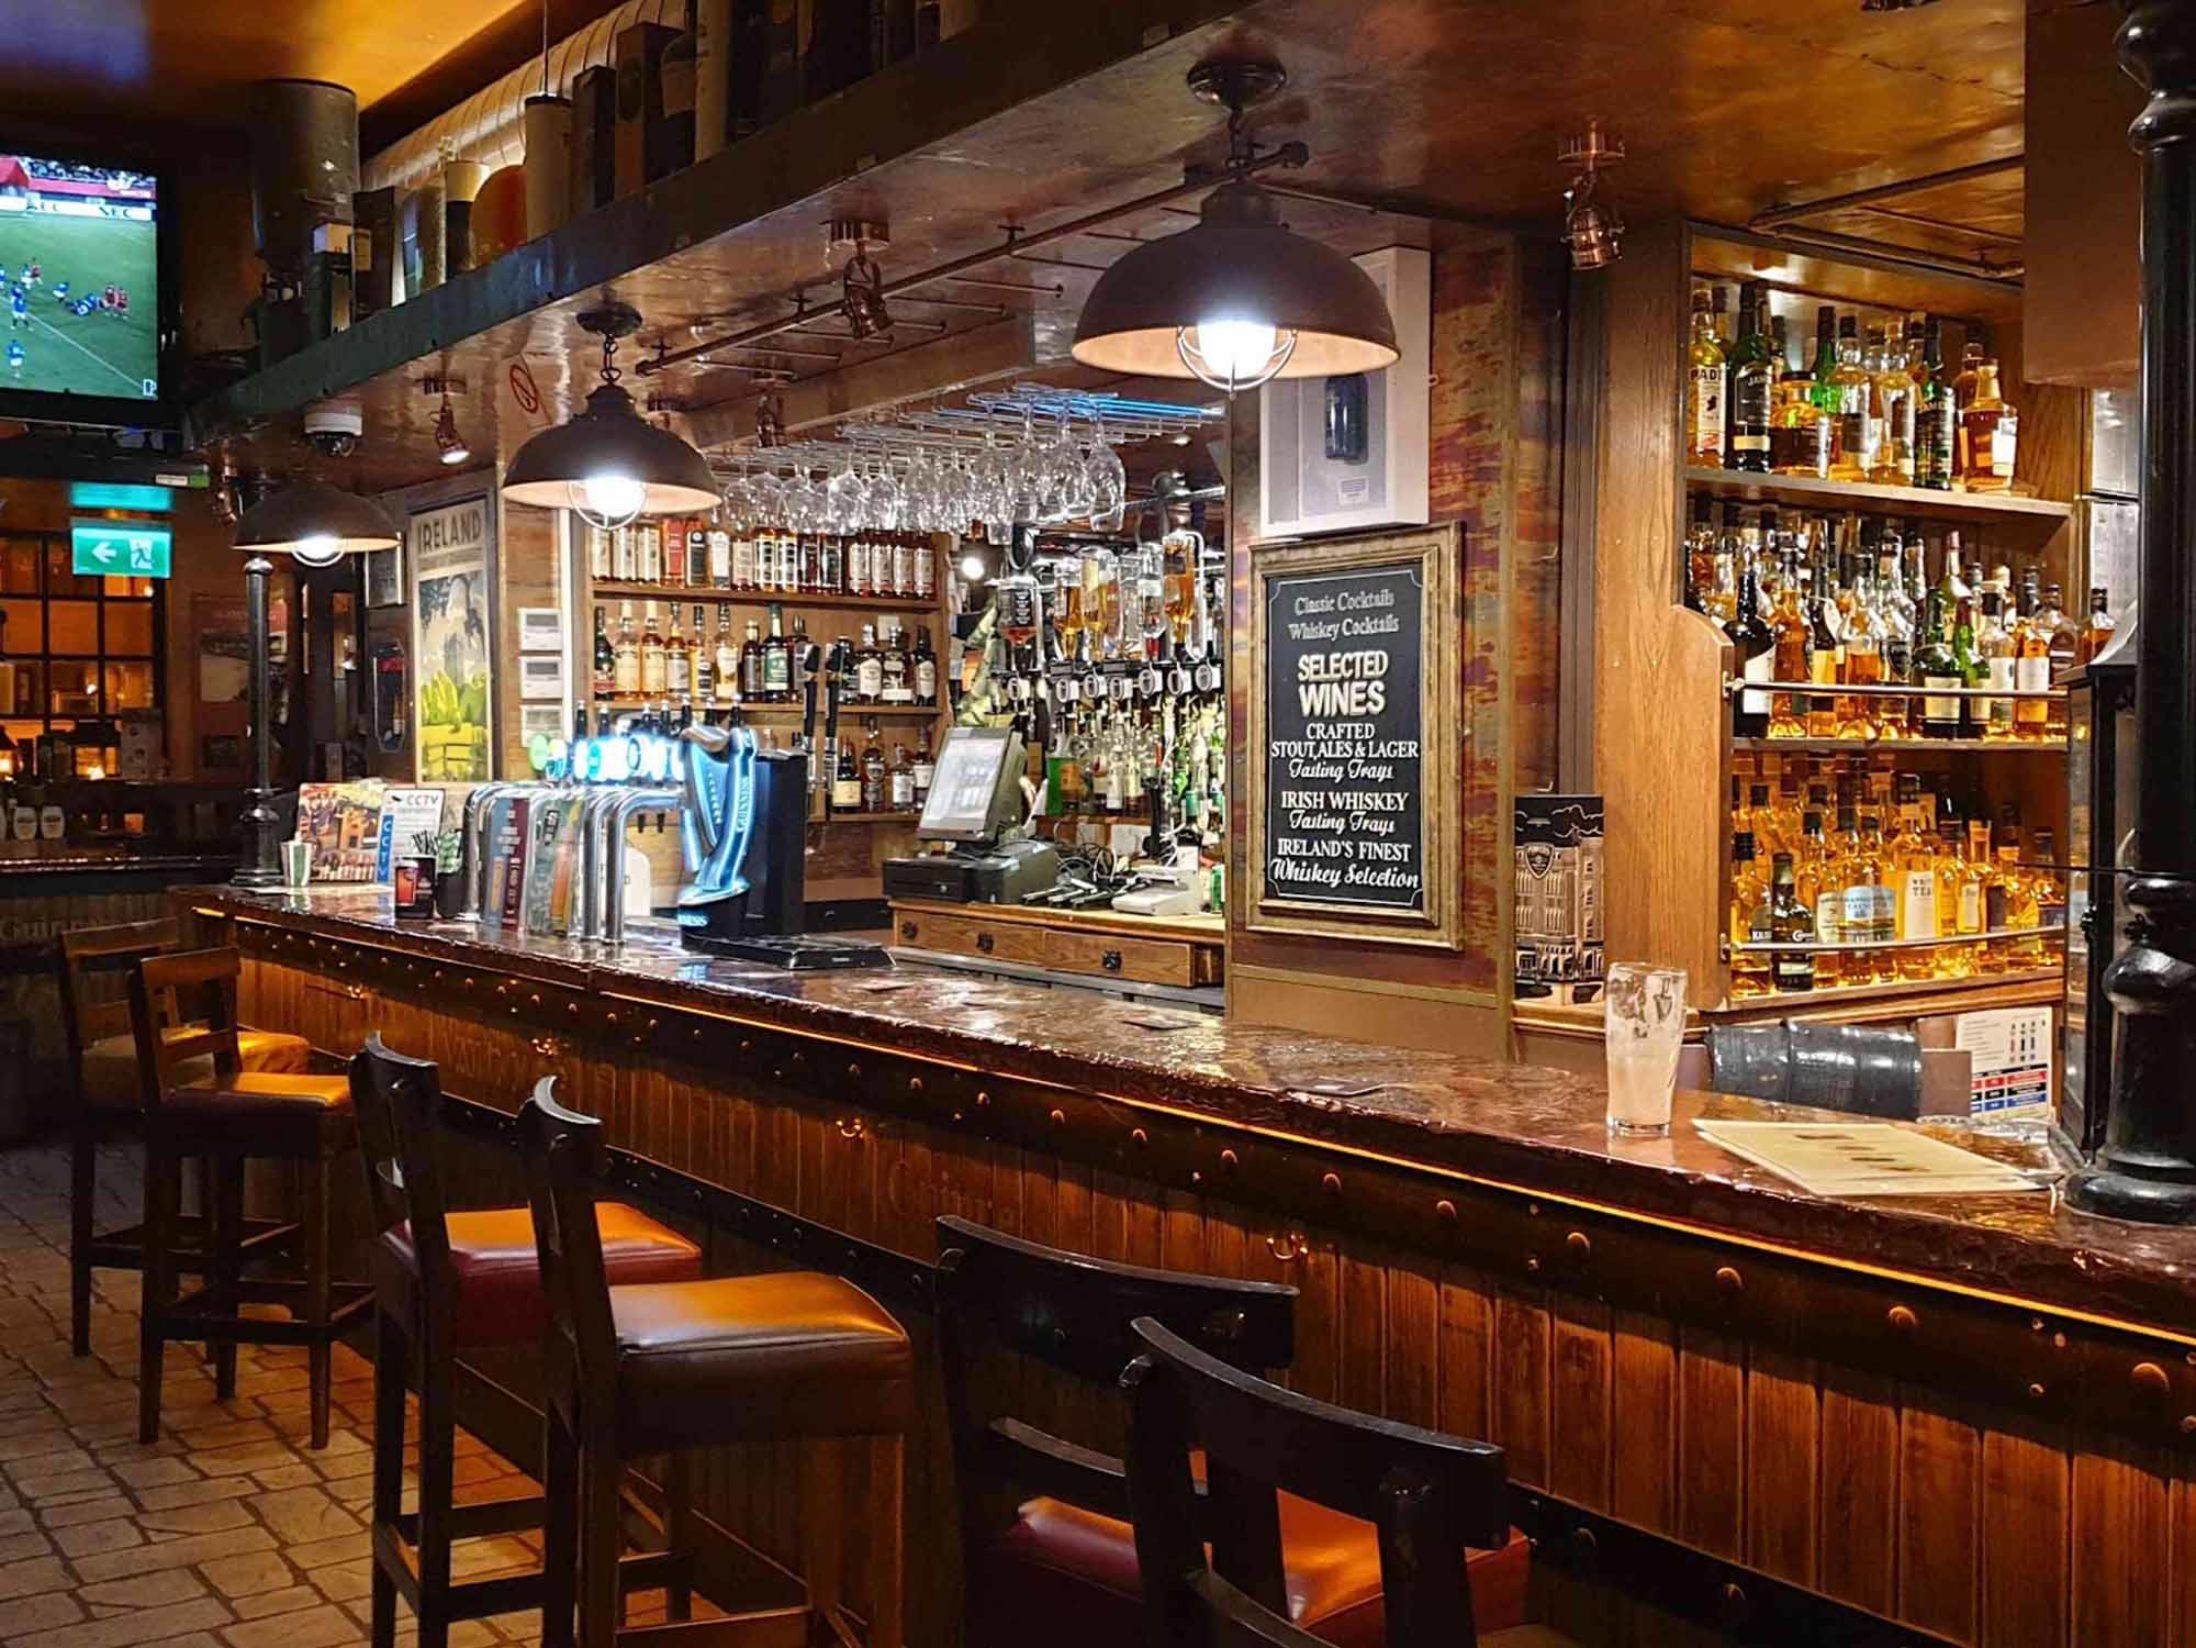 Vat House Bar - Best Bars in Dublin